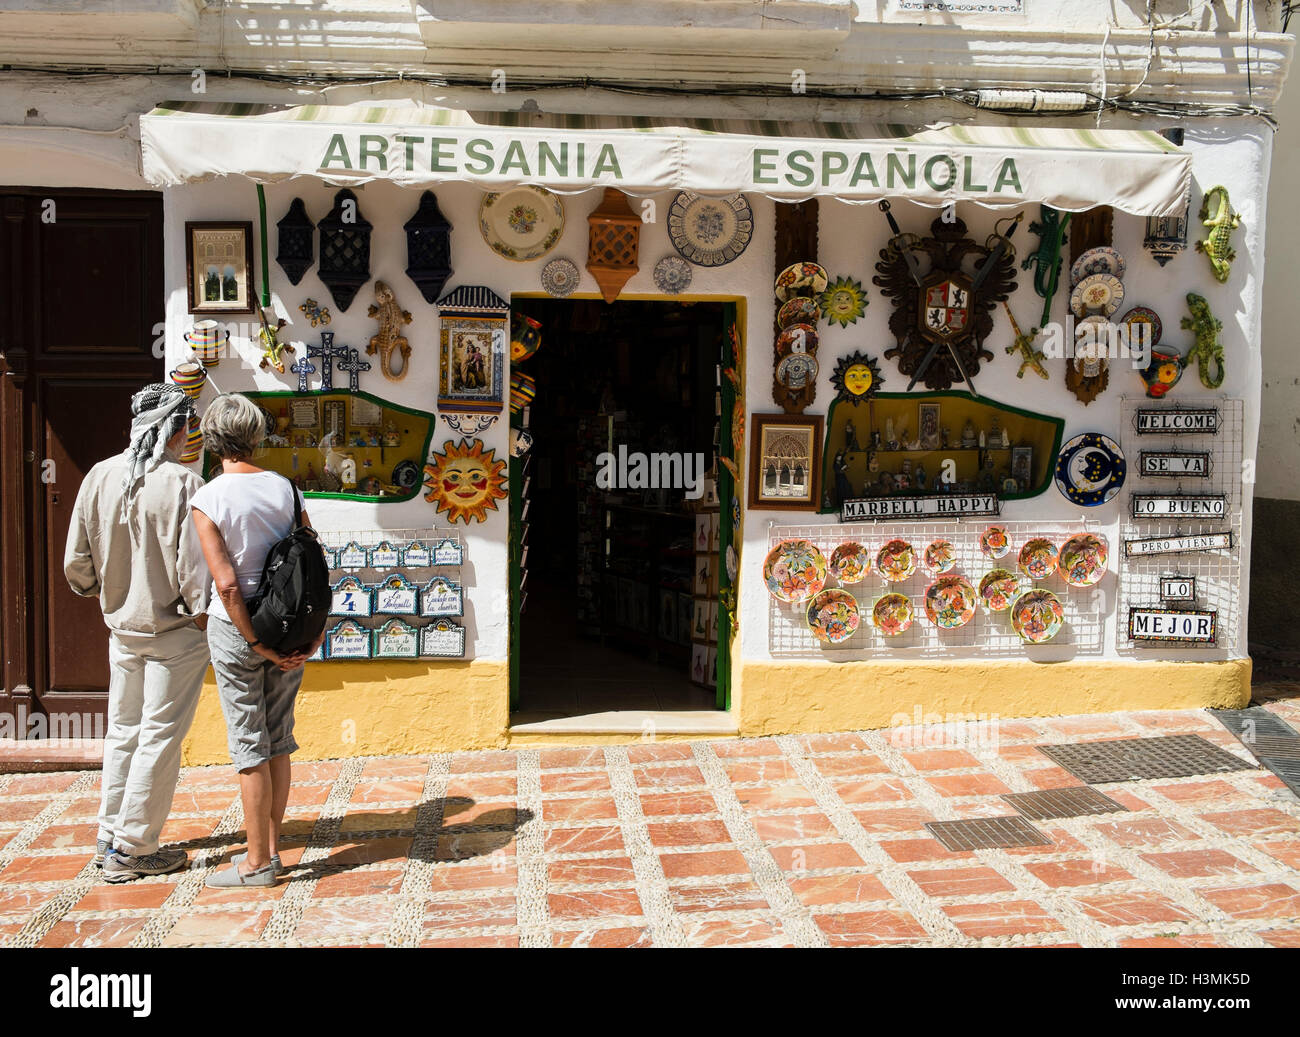 Artesanía española - artesanía española. Marbella, Málaga, España Foto de stock